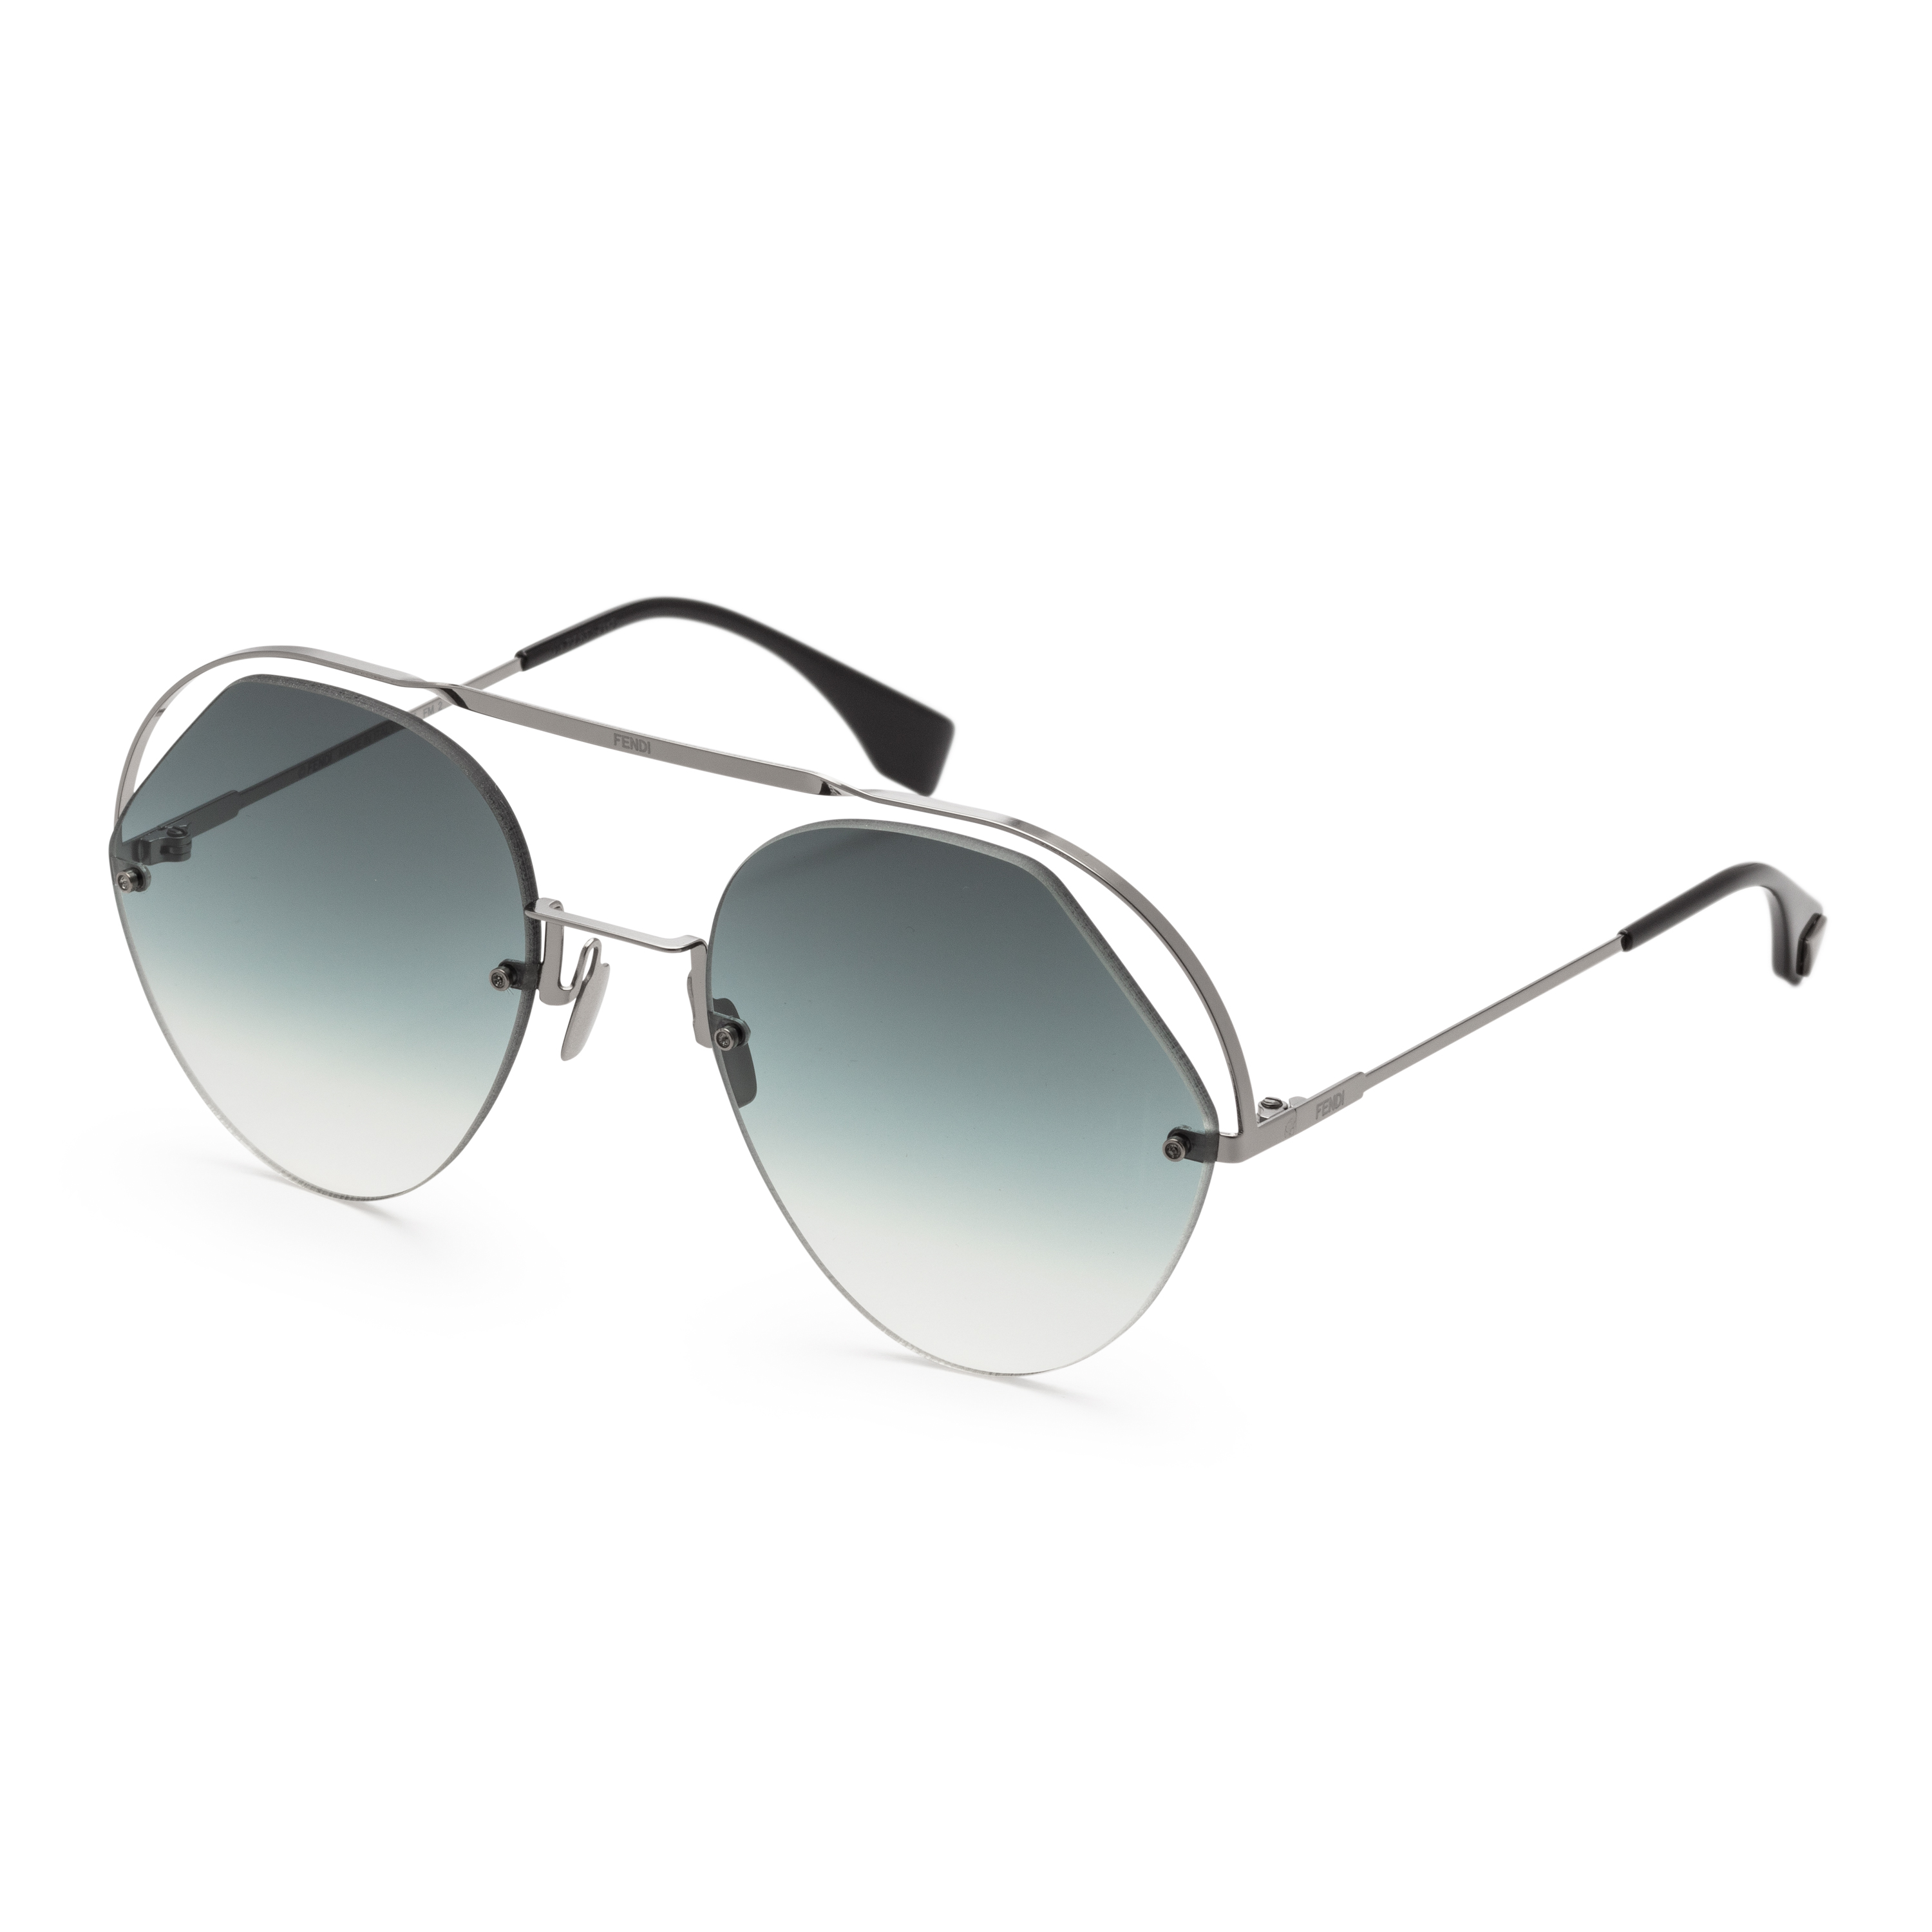 Fendi FF 0326/S KB79O Grey with Dark Grey Gradient lens Sunglasses